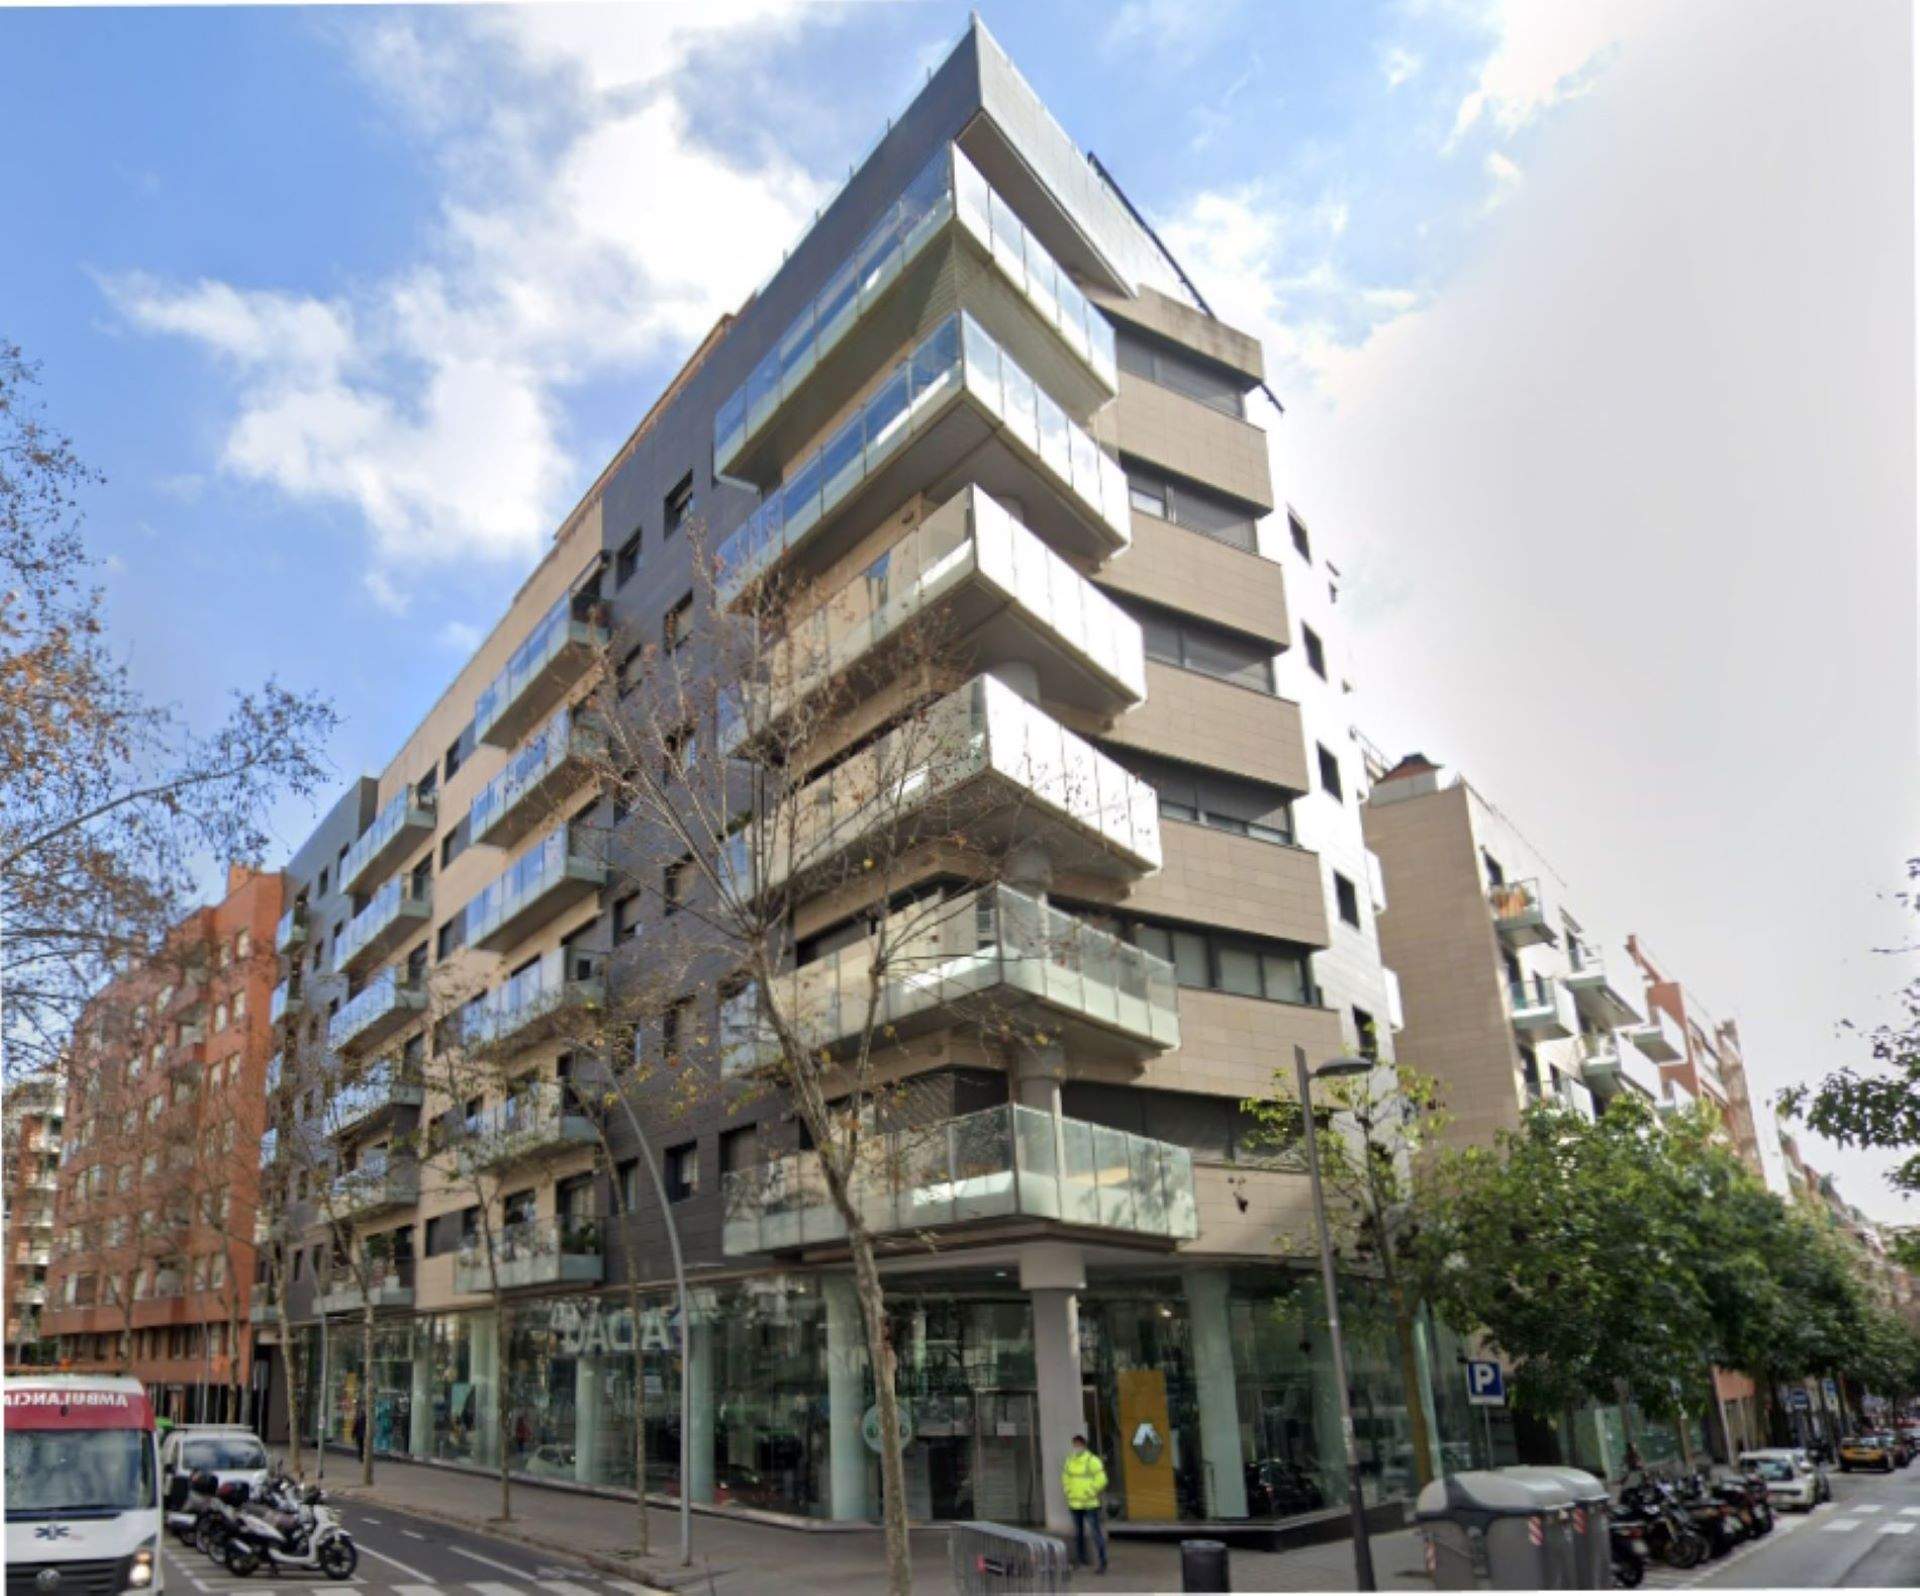 Dos blocs a Barcelona, de la constructora de l'incendi de València, demanen una inspecció